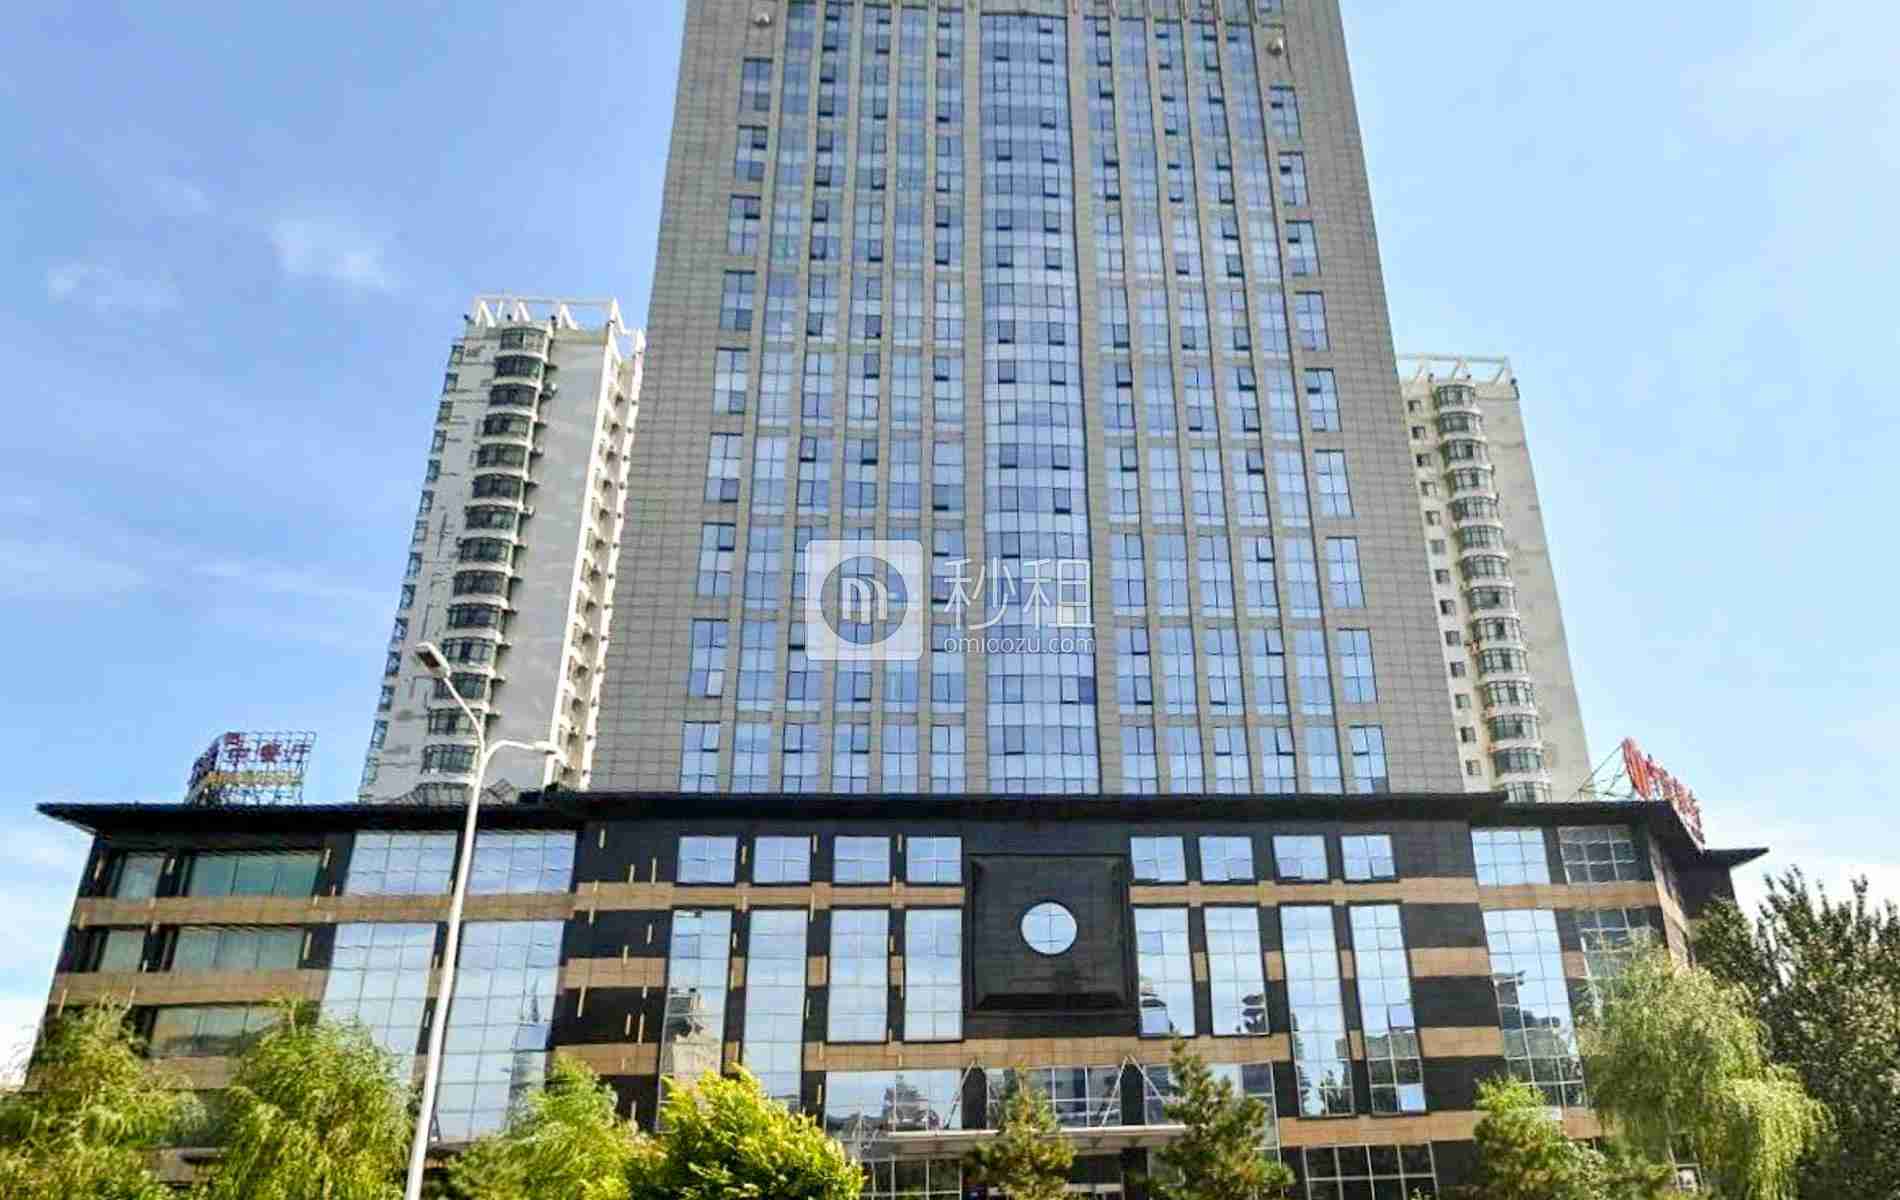 浦北县投资大厦图片